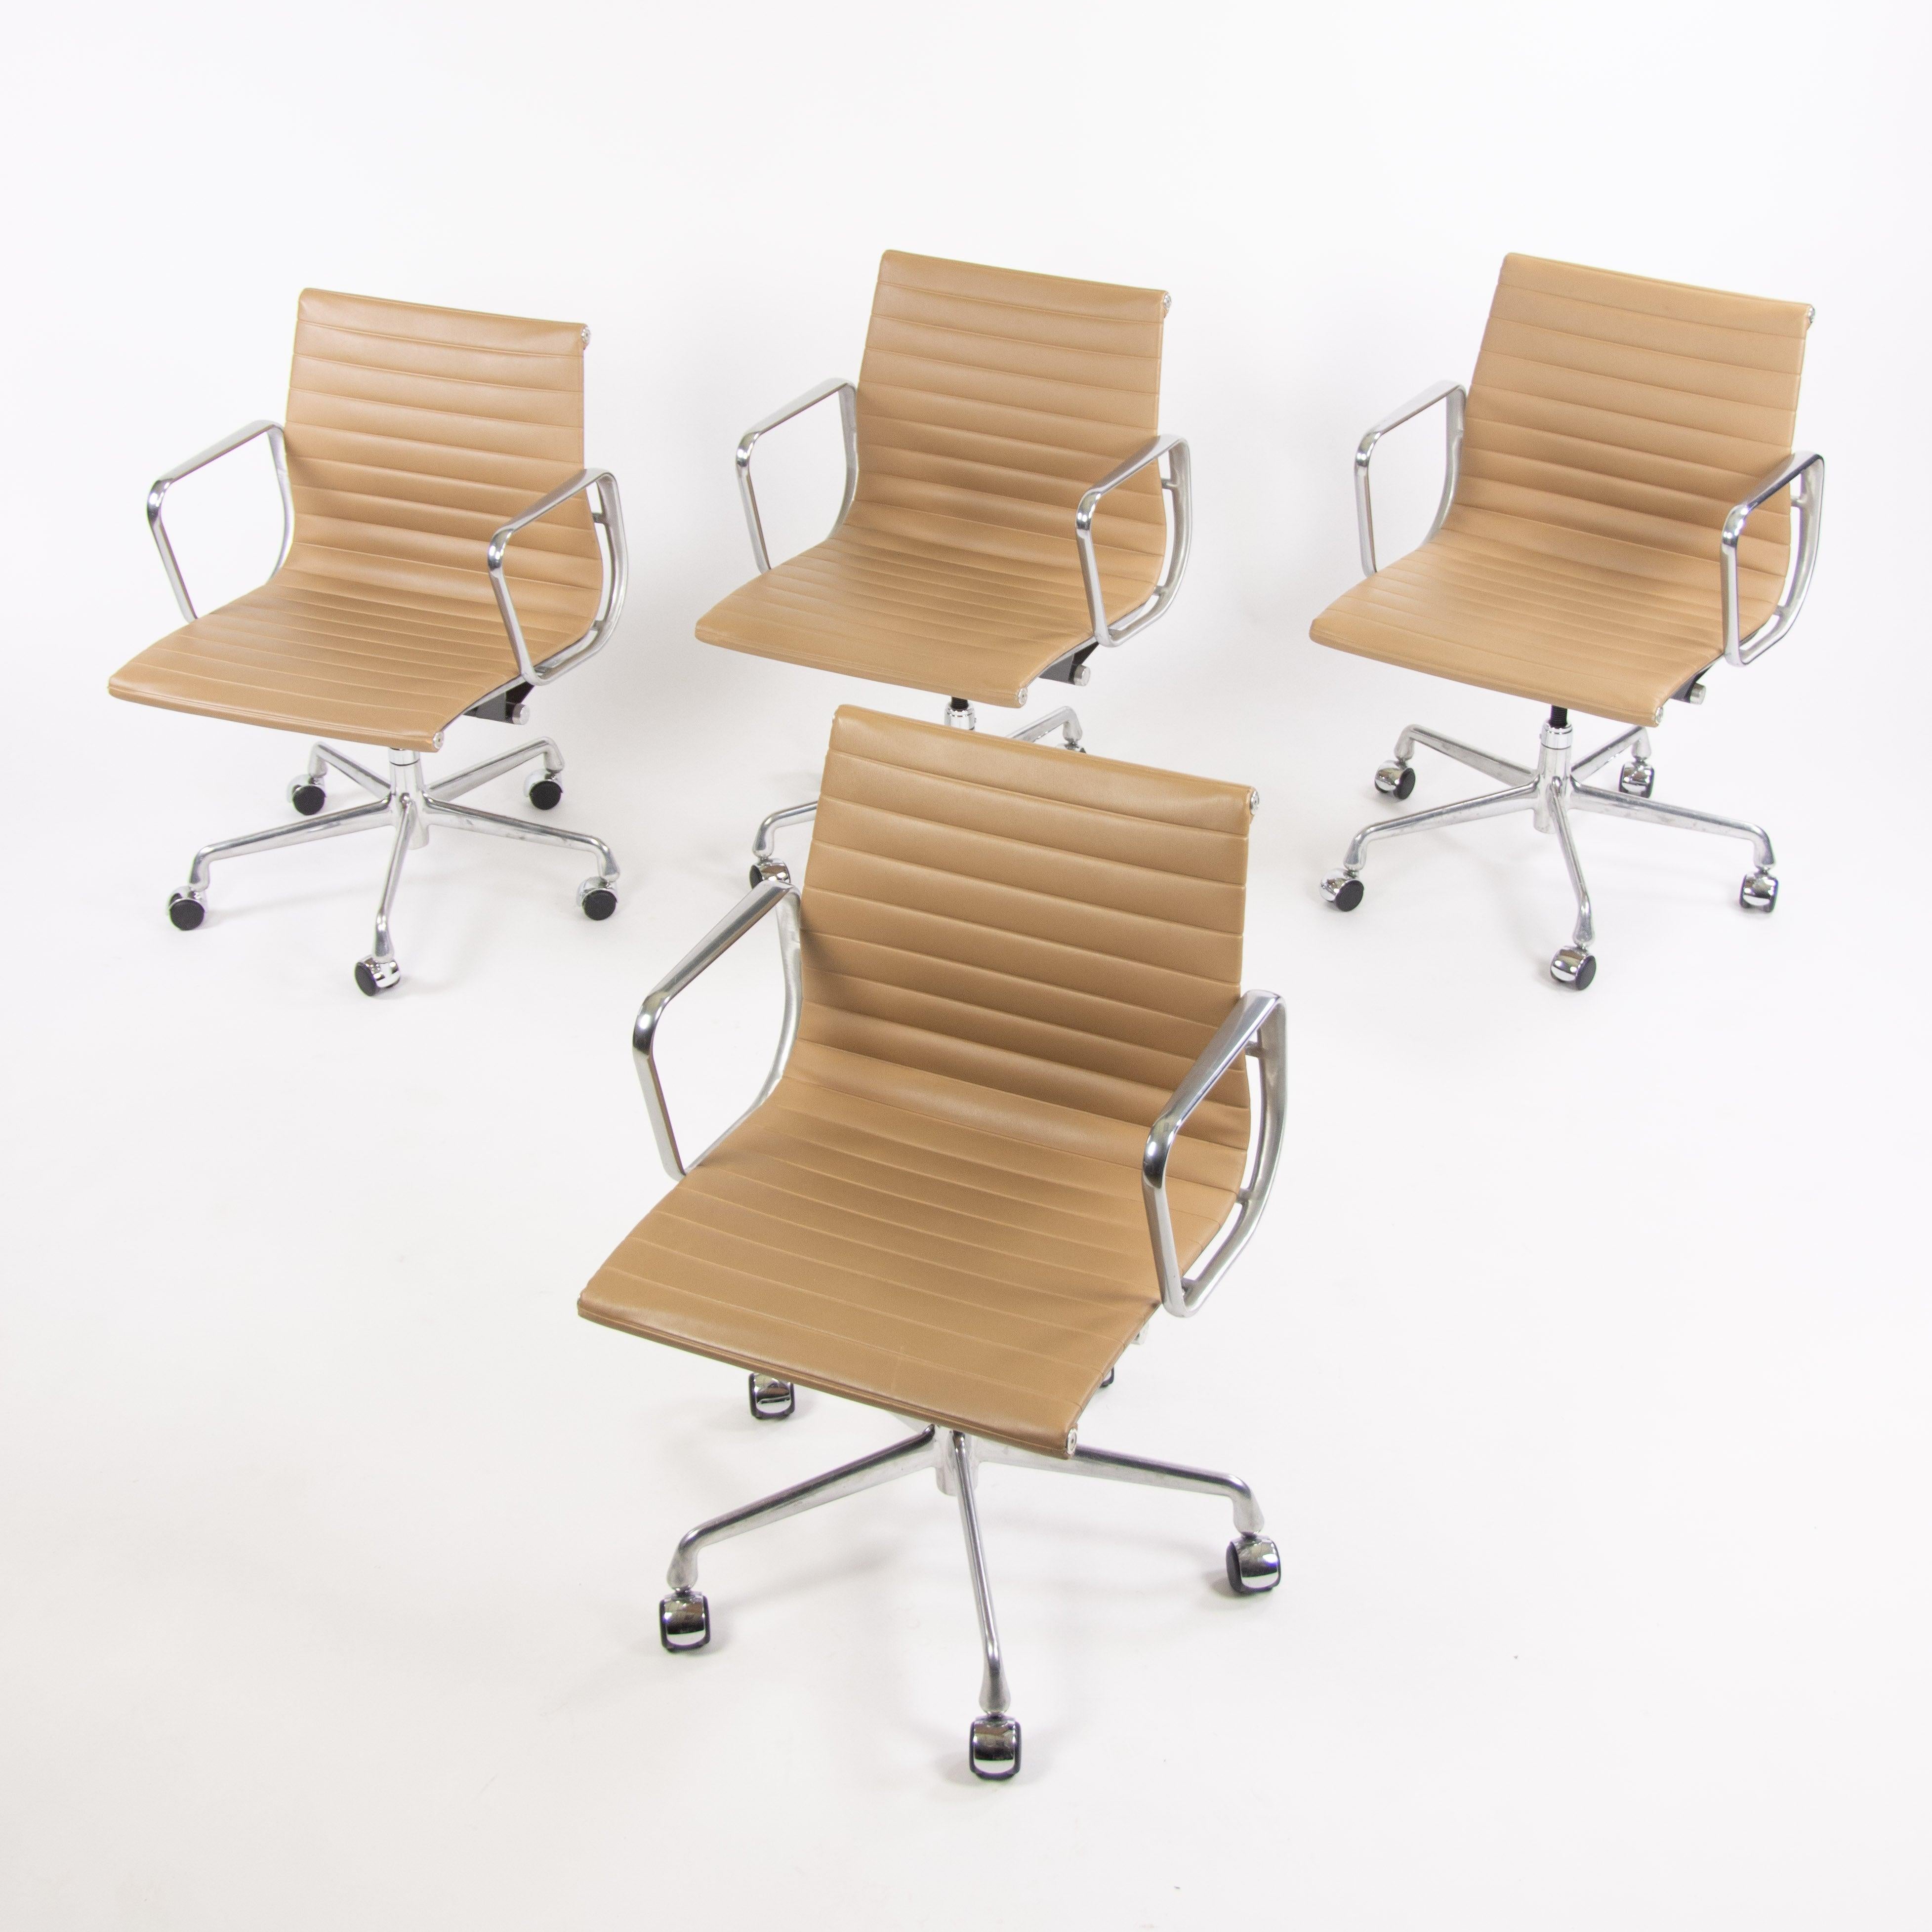 Zum Verkauf angeboten wird ein einzelner (mehrere Stühle sind verfügbar, aber der angegebene Preis ist für jeden Stuhl) Herman Miller Eames Aluminium Gruppe Management Schreibtischstuhl in tan Naugahyde, das bevorzugte Material von Charles Eames für